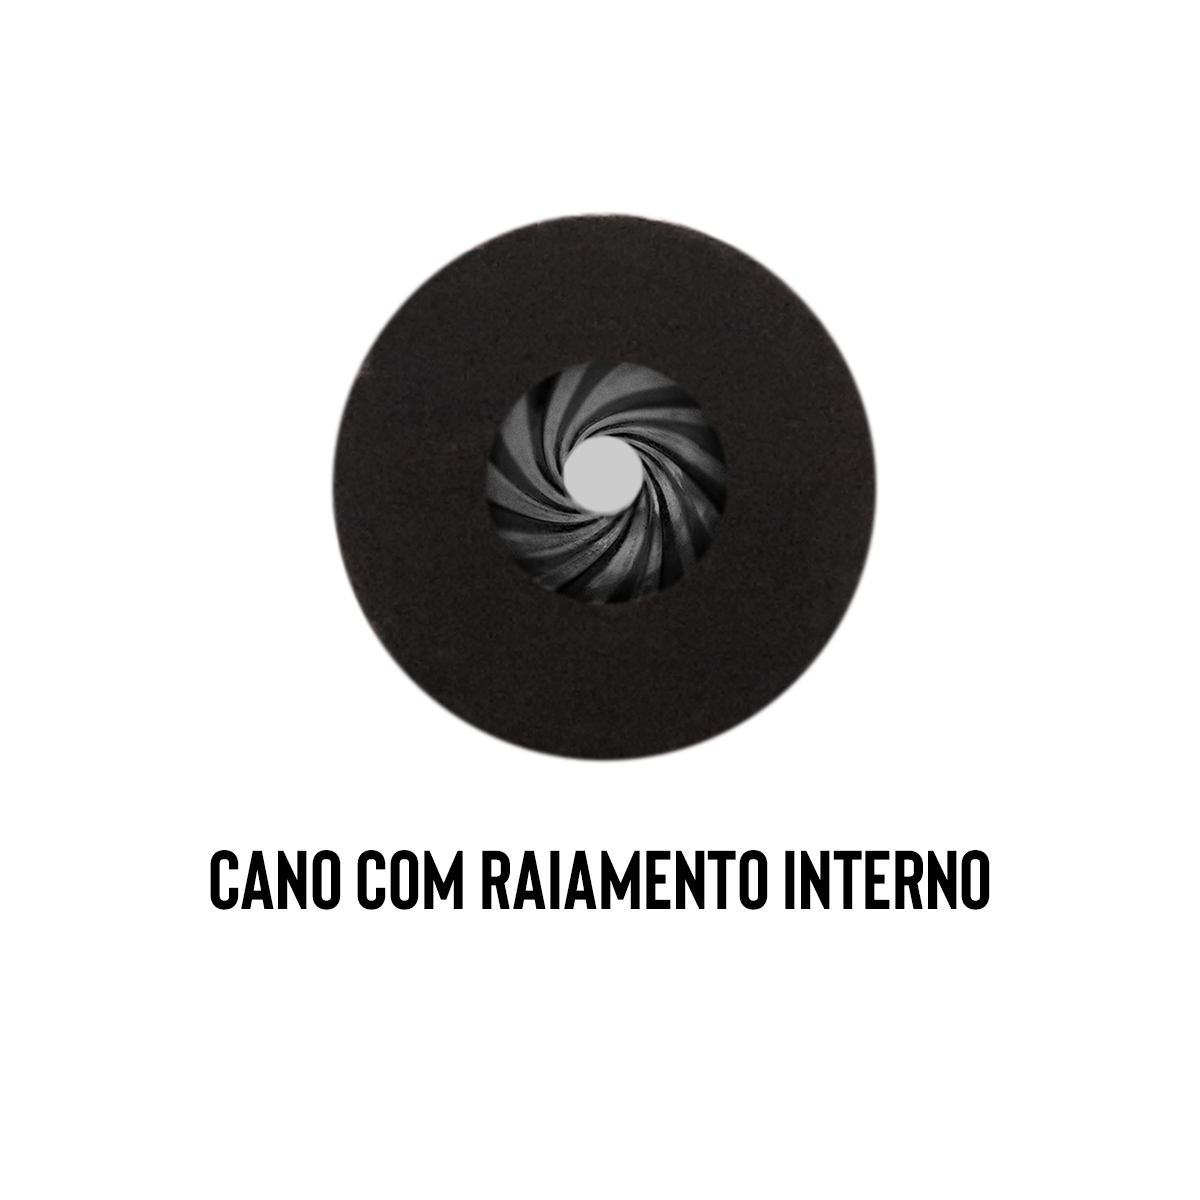 Cano Original MODELO NOVO SEM BLOCO Carabina de Pressão Fiora 6.35mm 48cm